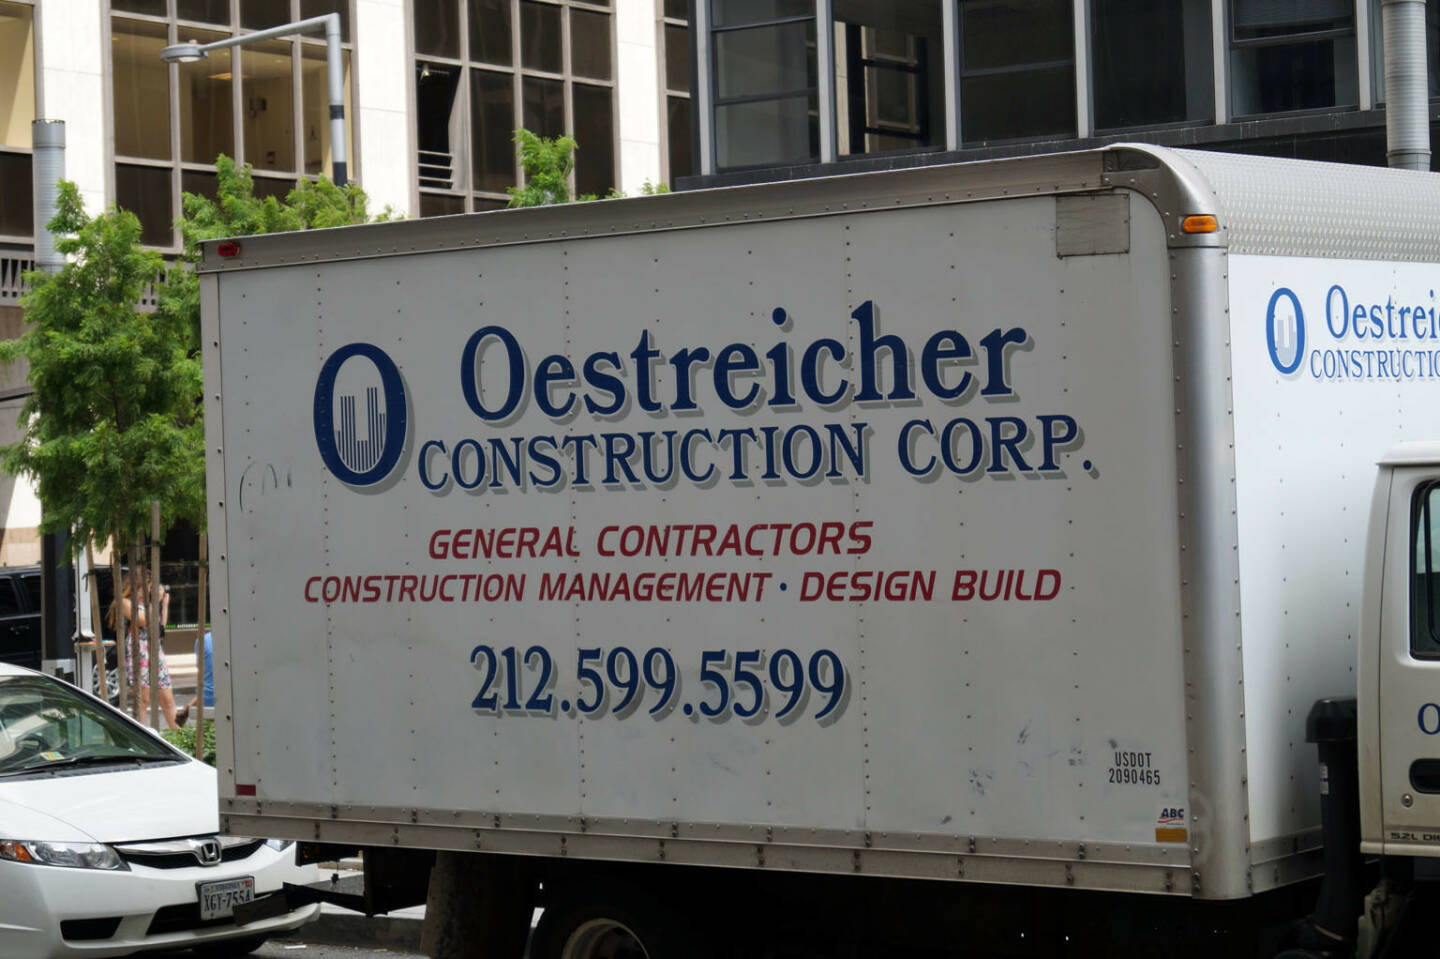 Oestreicher Construction Corp. (Bild: bestevent.at)